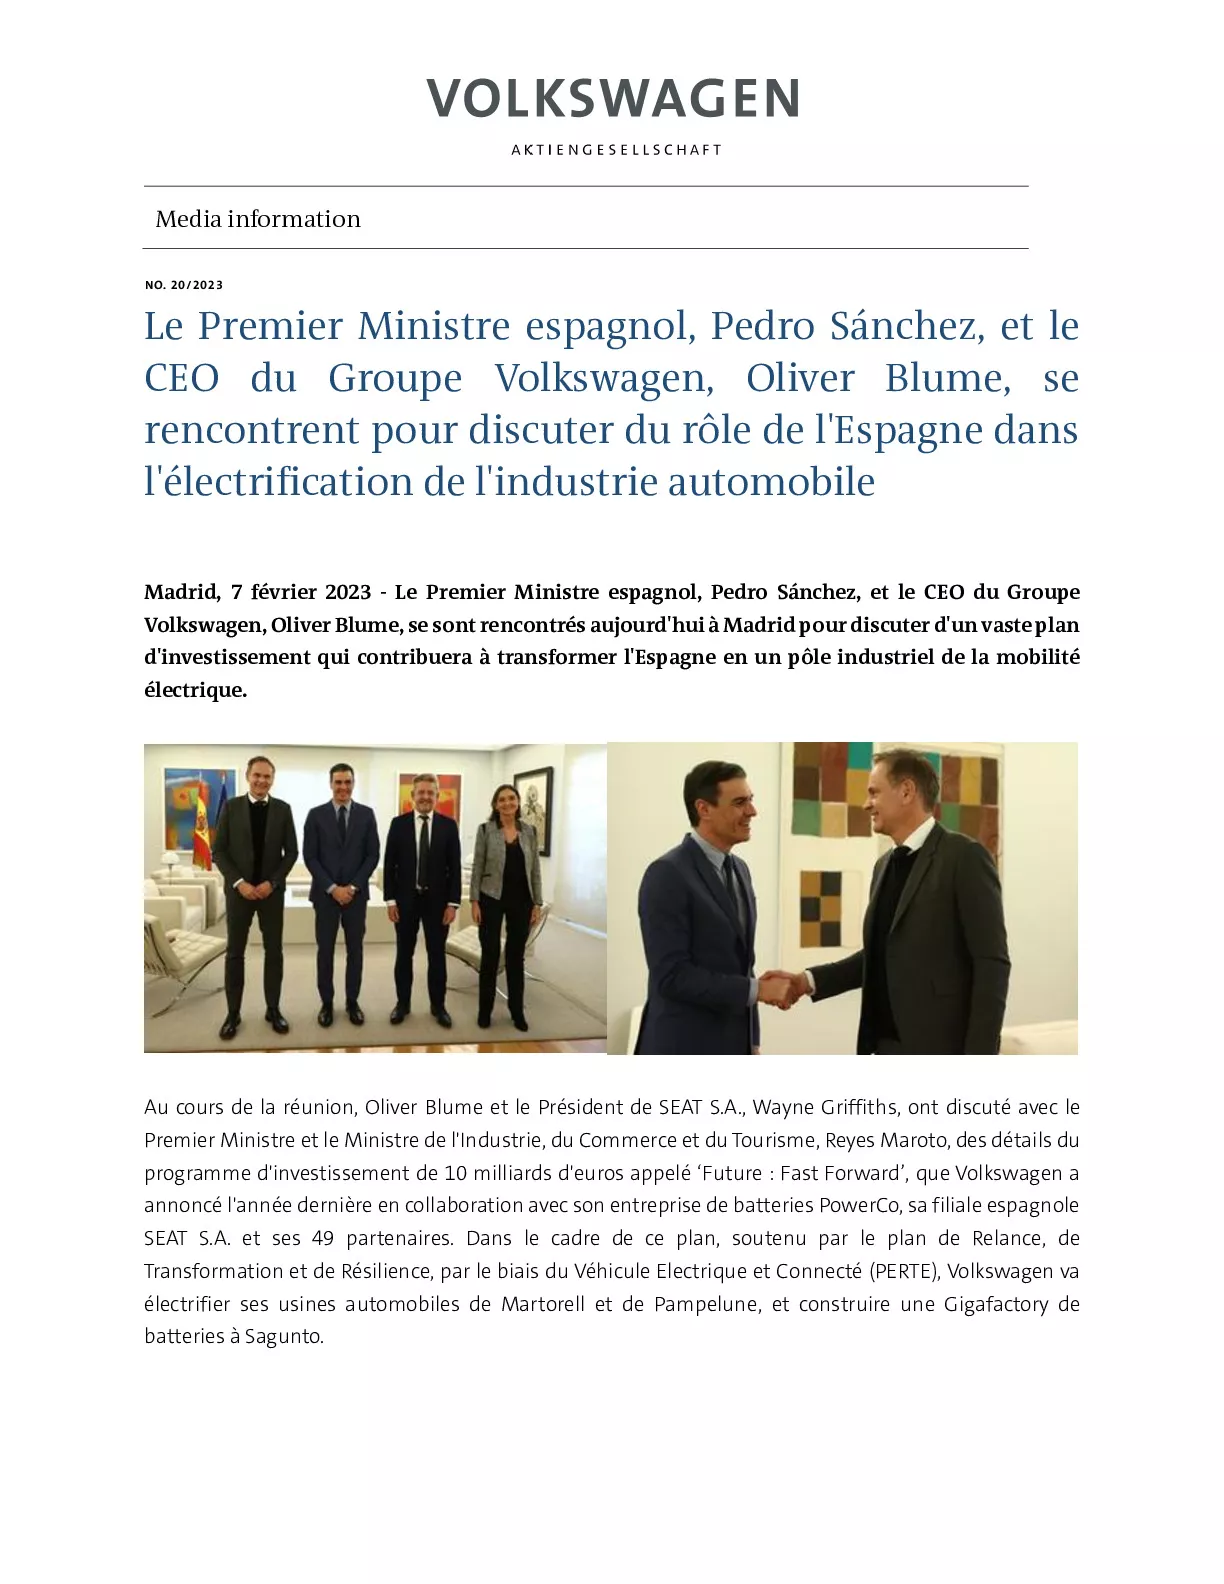 23_02_07_Le Premier ministre espagnol Pedro Sánchez et le CEO du Groupe Volkswagen Oliver Blume se rencontrent pour discuter du rôle de l'Espagne dans l'électrification de -pdf